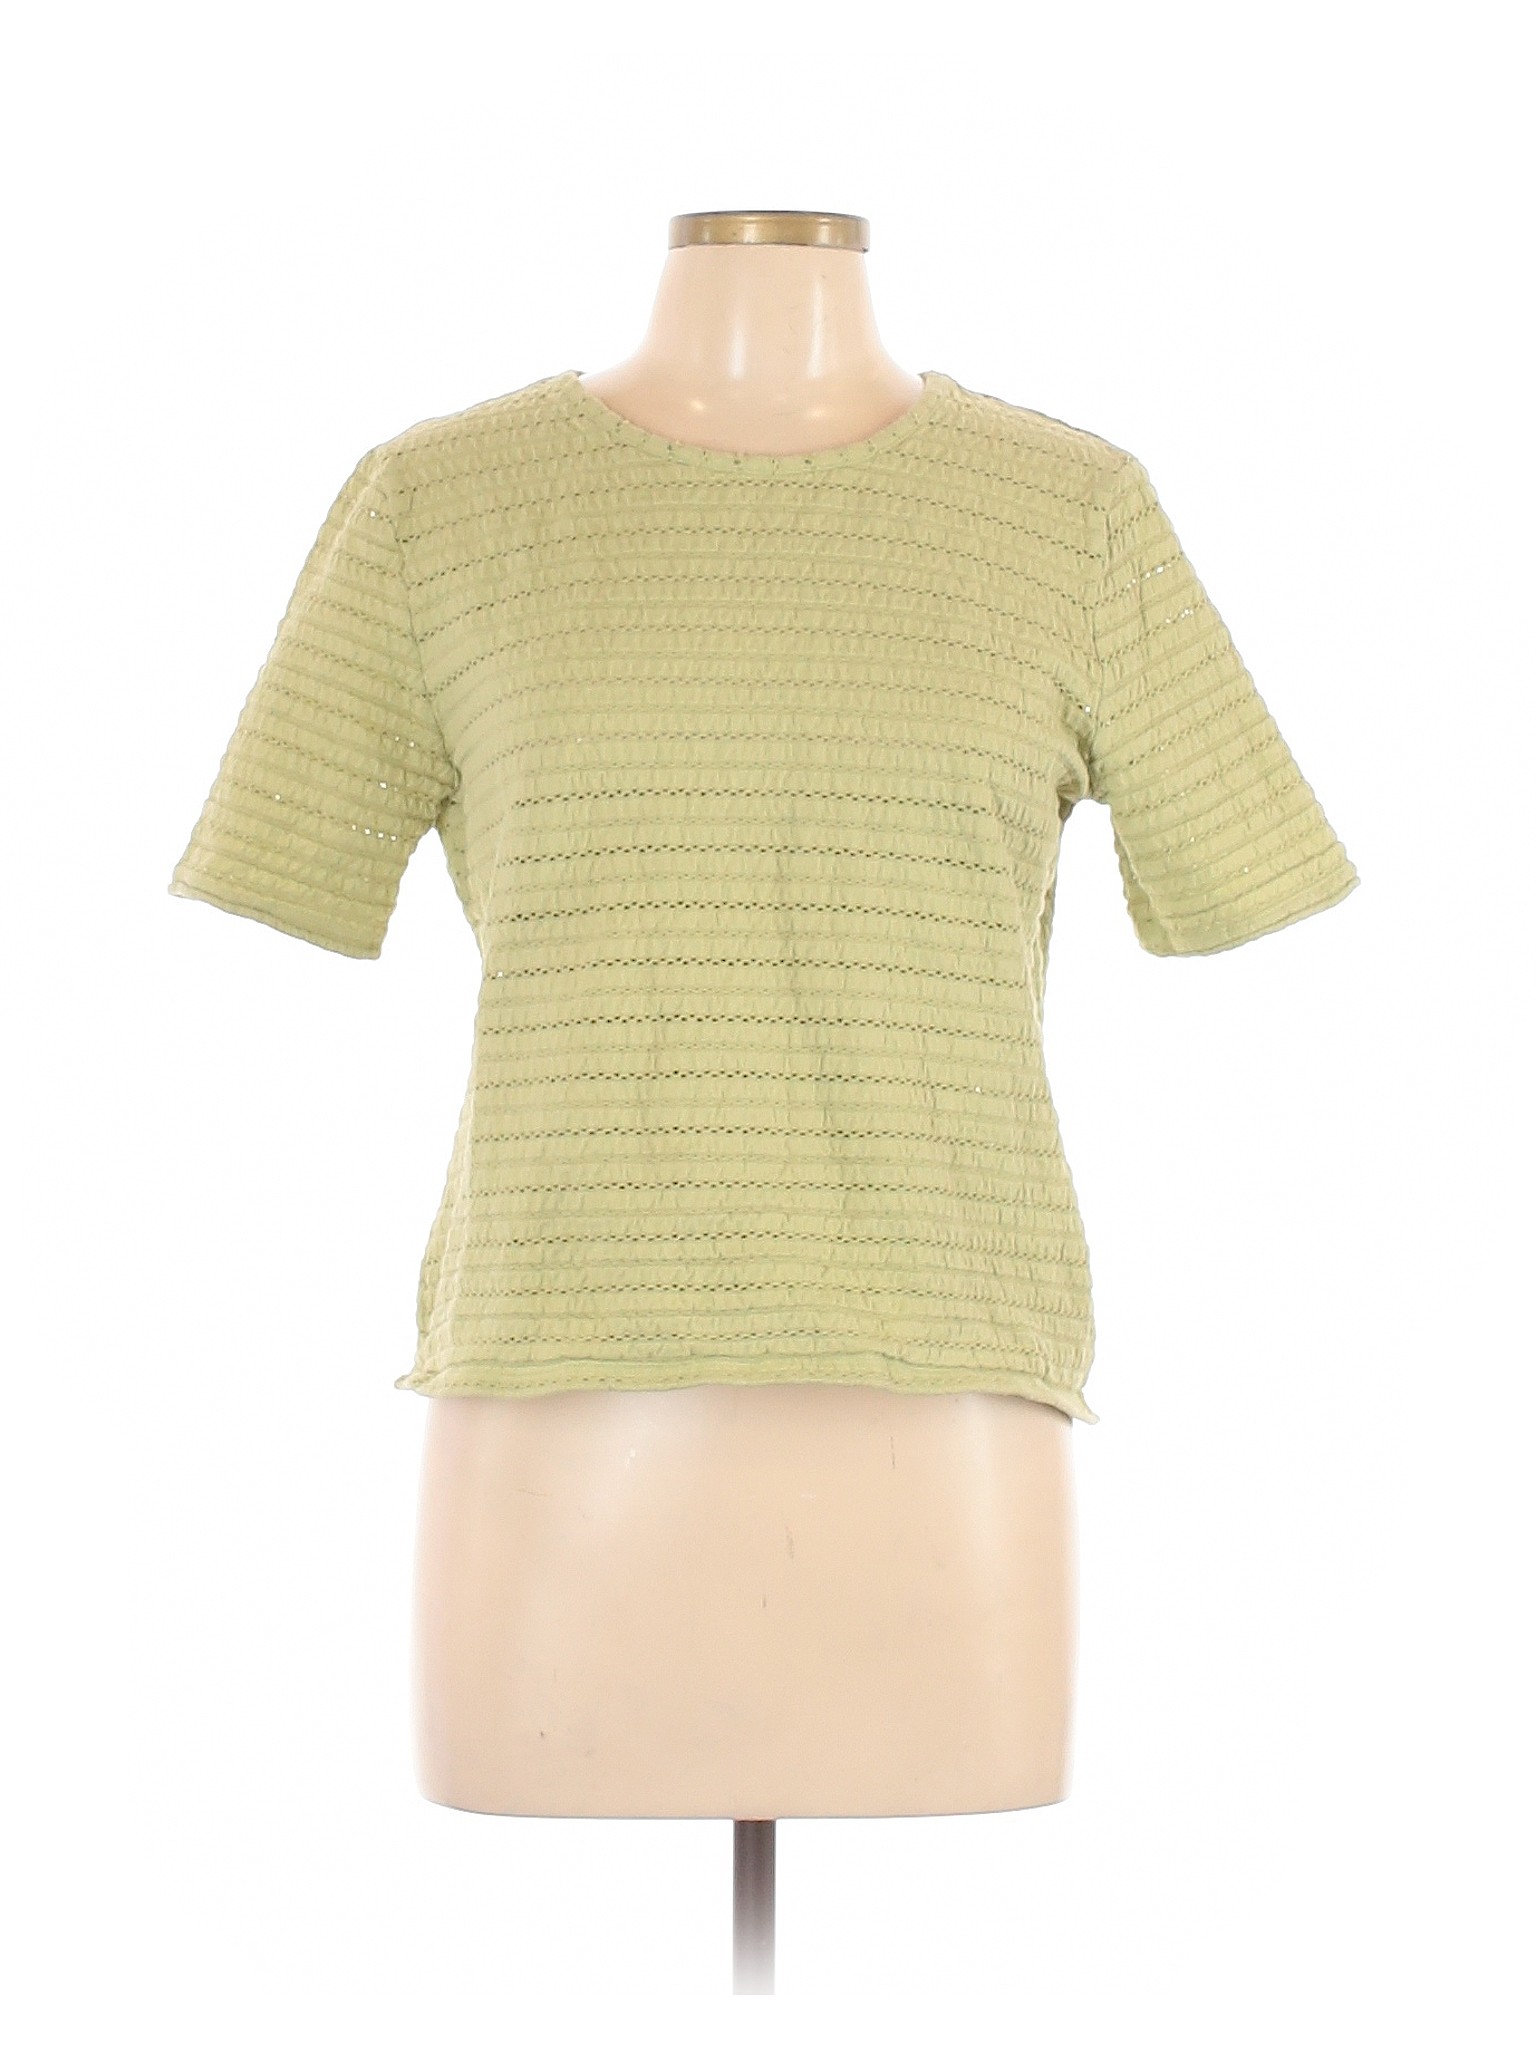 Appleseeds Women Green Short Sleeve Top L | eBay